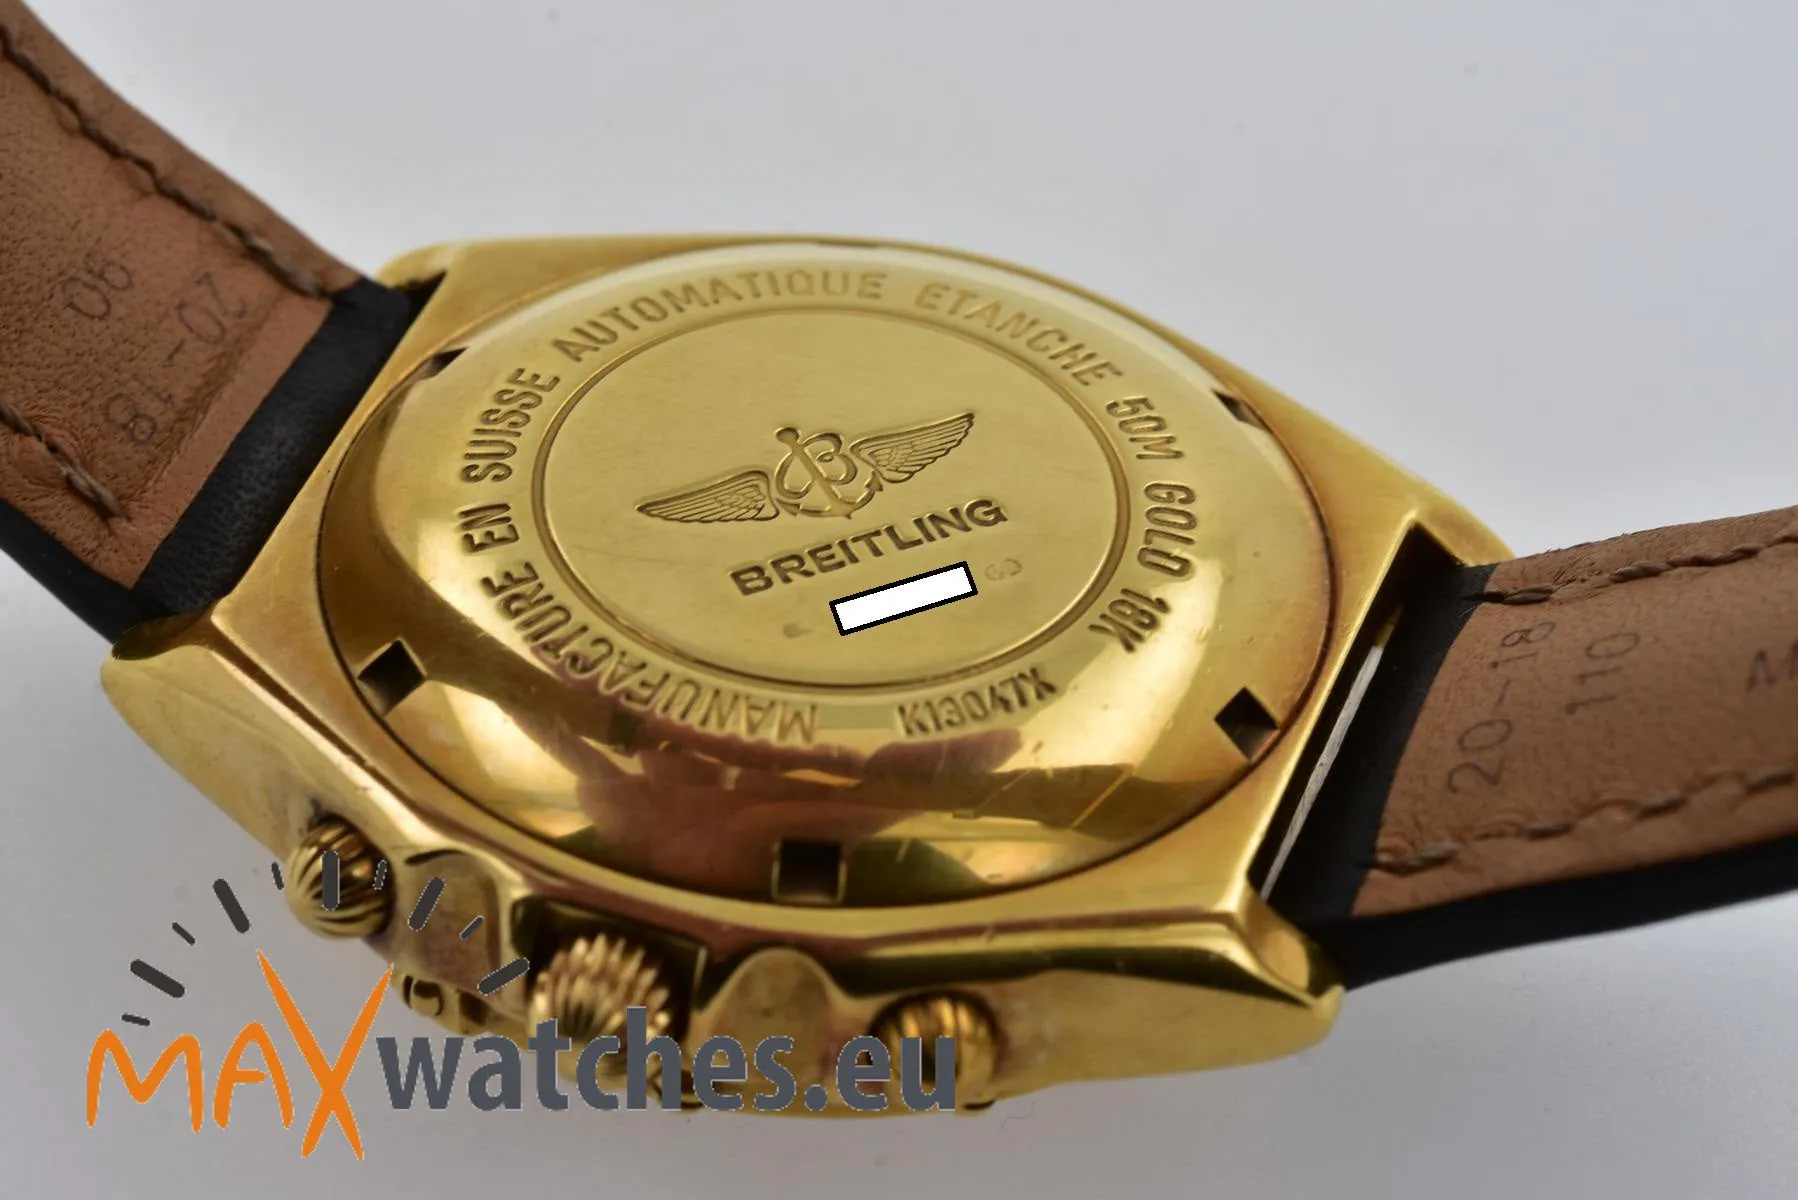 Breitling Chronomat K13047X 39mm Black 8